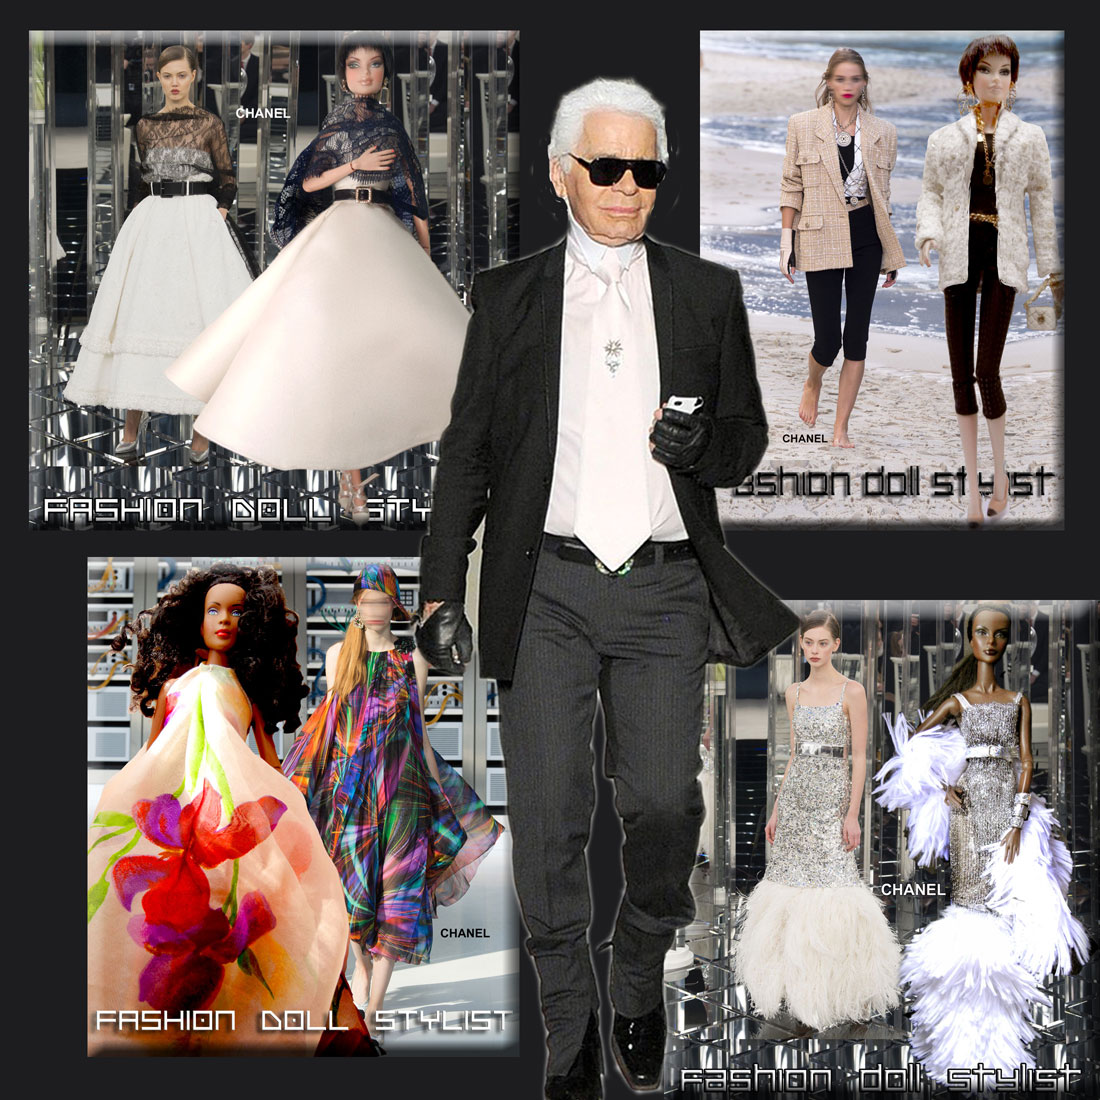 Fashion Doll Stylist: Adieu, Mr. Lagerfeld